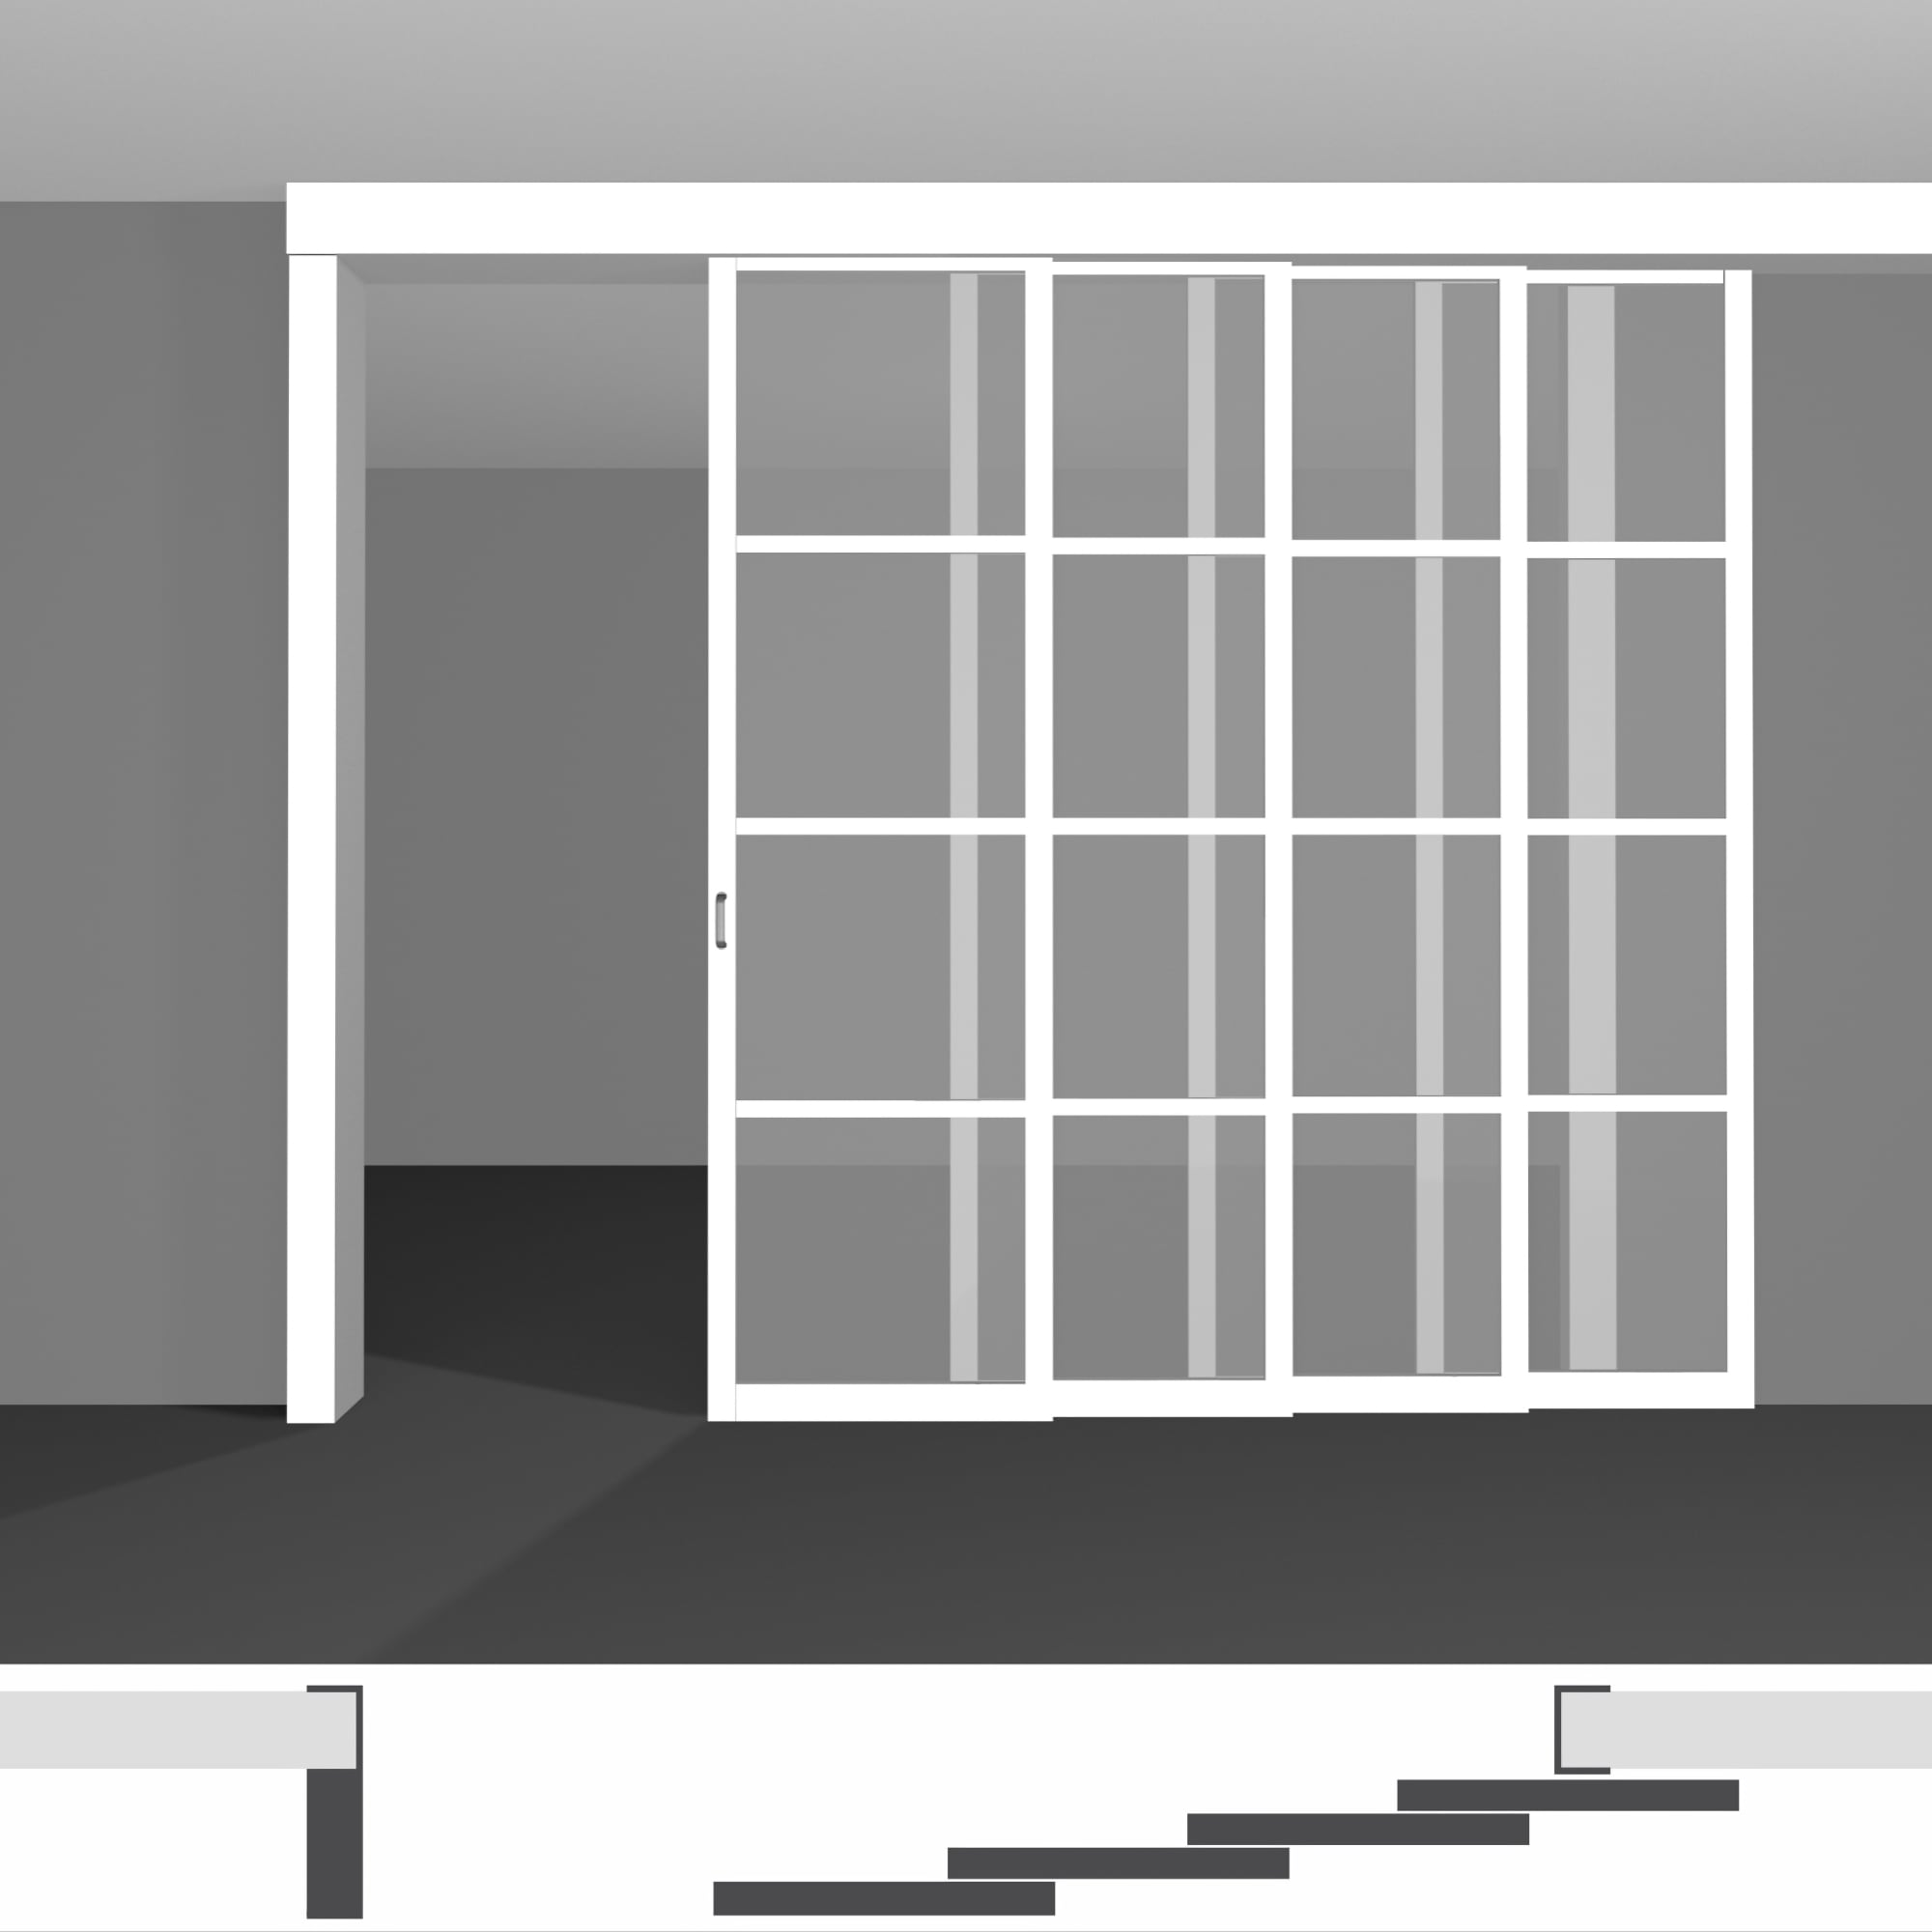 Міжкімнатна перегородка для зонування кімнати, виготовлена за індивідуальними розмірами, доступна до купівлі в Києві - P04.1 • на чотири світлі стулки висотою до 2430 мм • з монтажем вздовж стіни